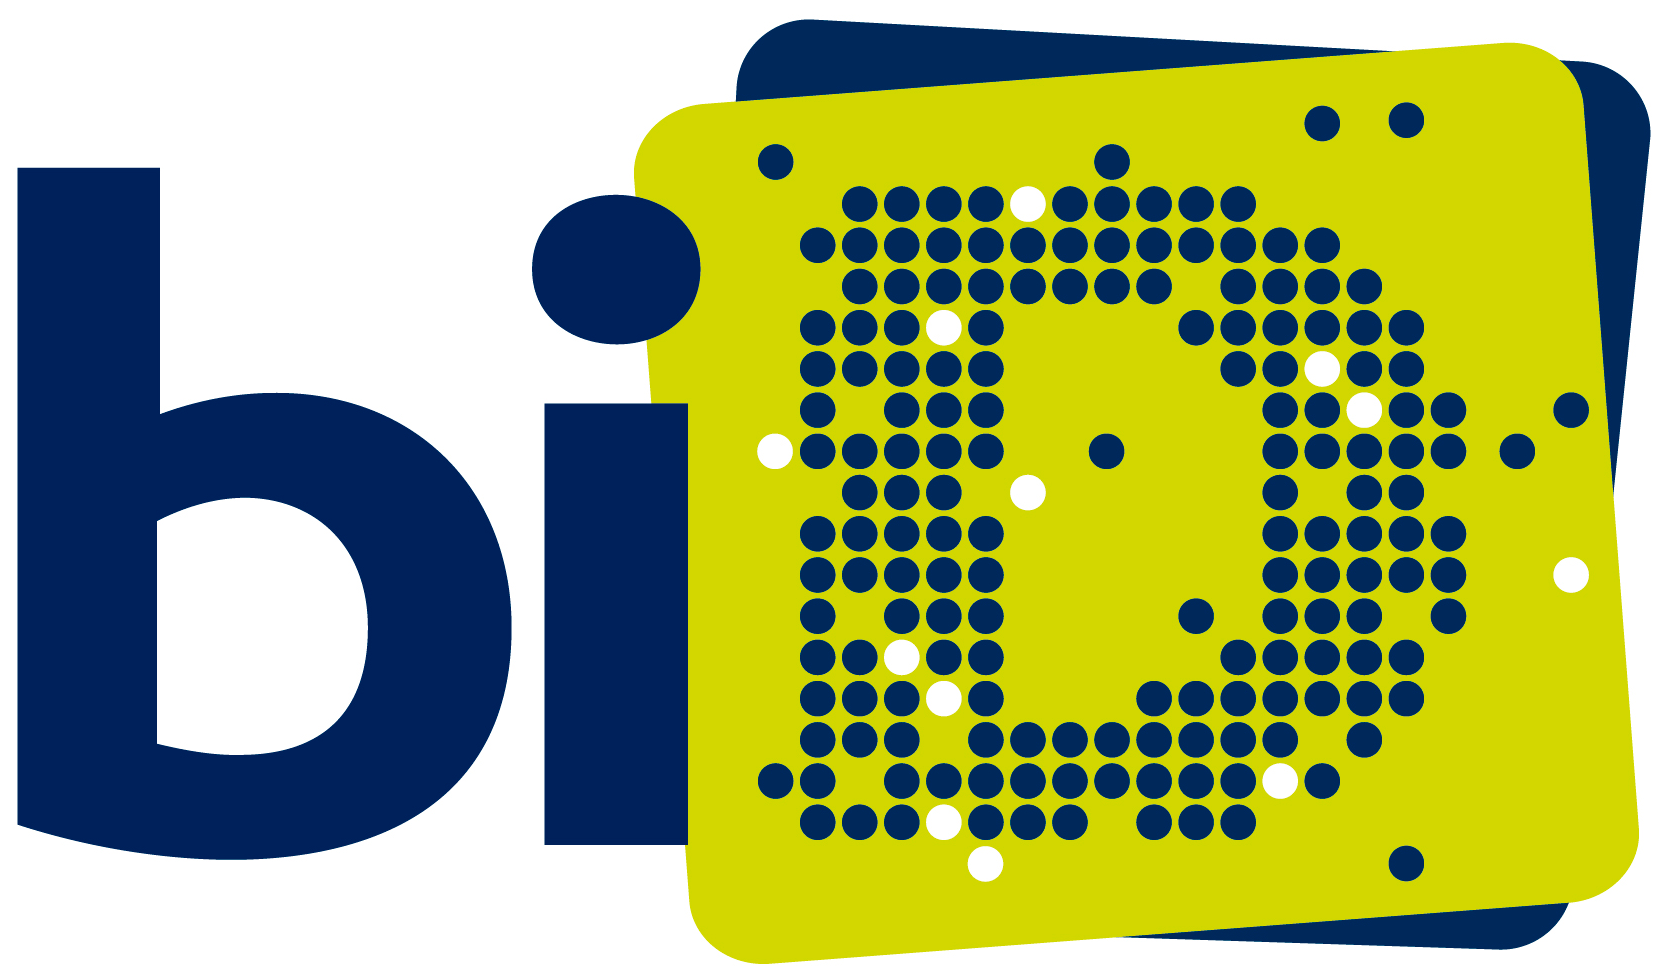 Logo BID